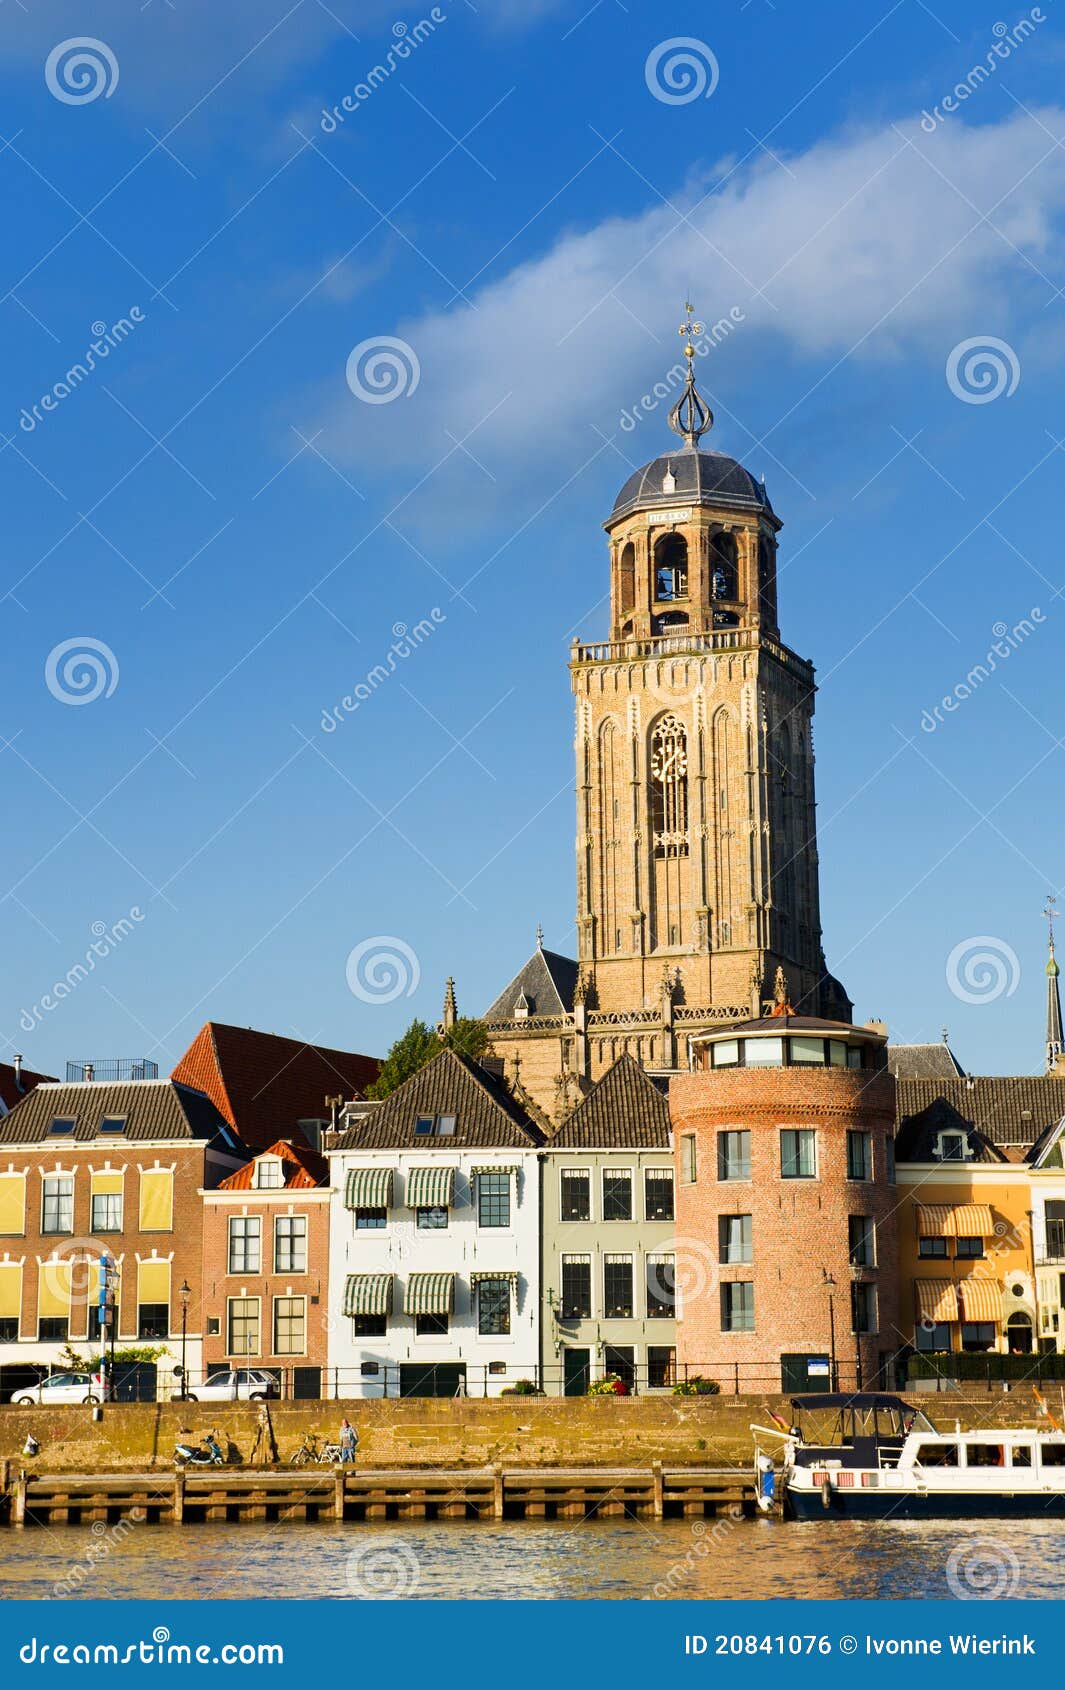 dutch town deventer with church